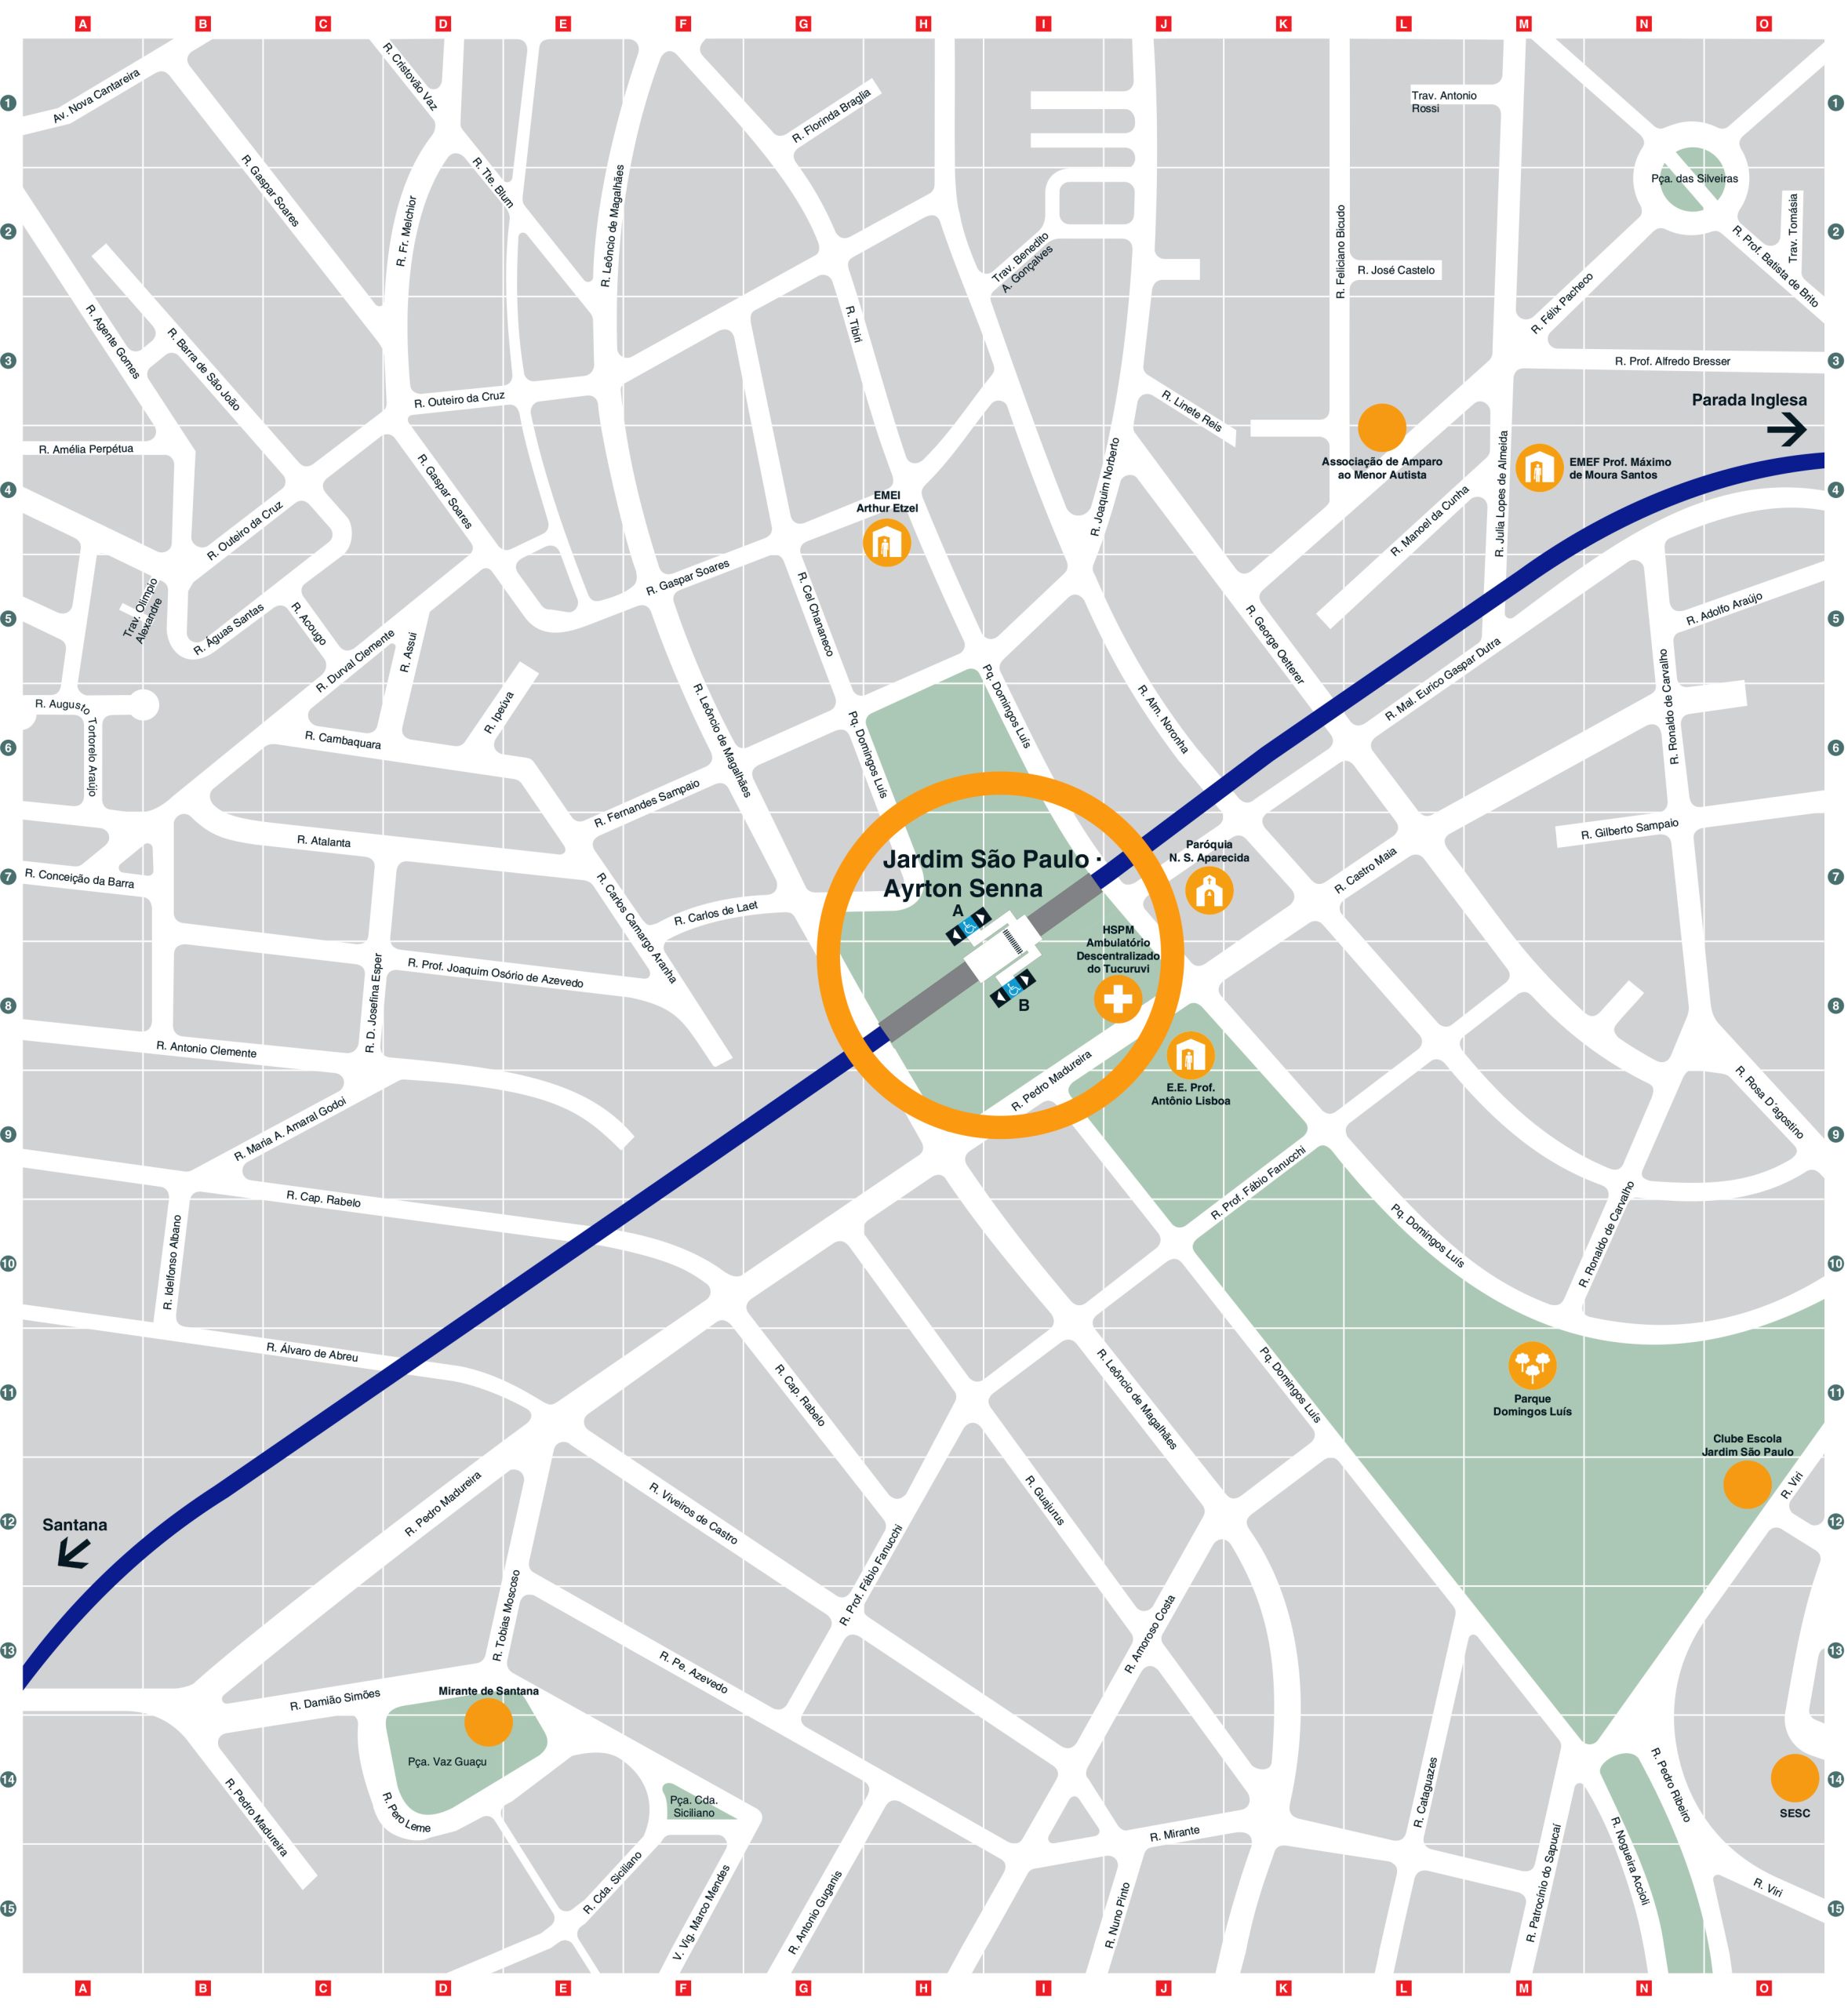 Mapa dos arredores da Estação Jardim São Paulo-Ayrton Senna